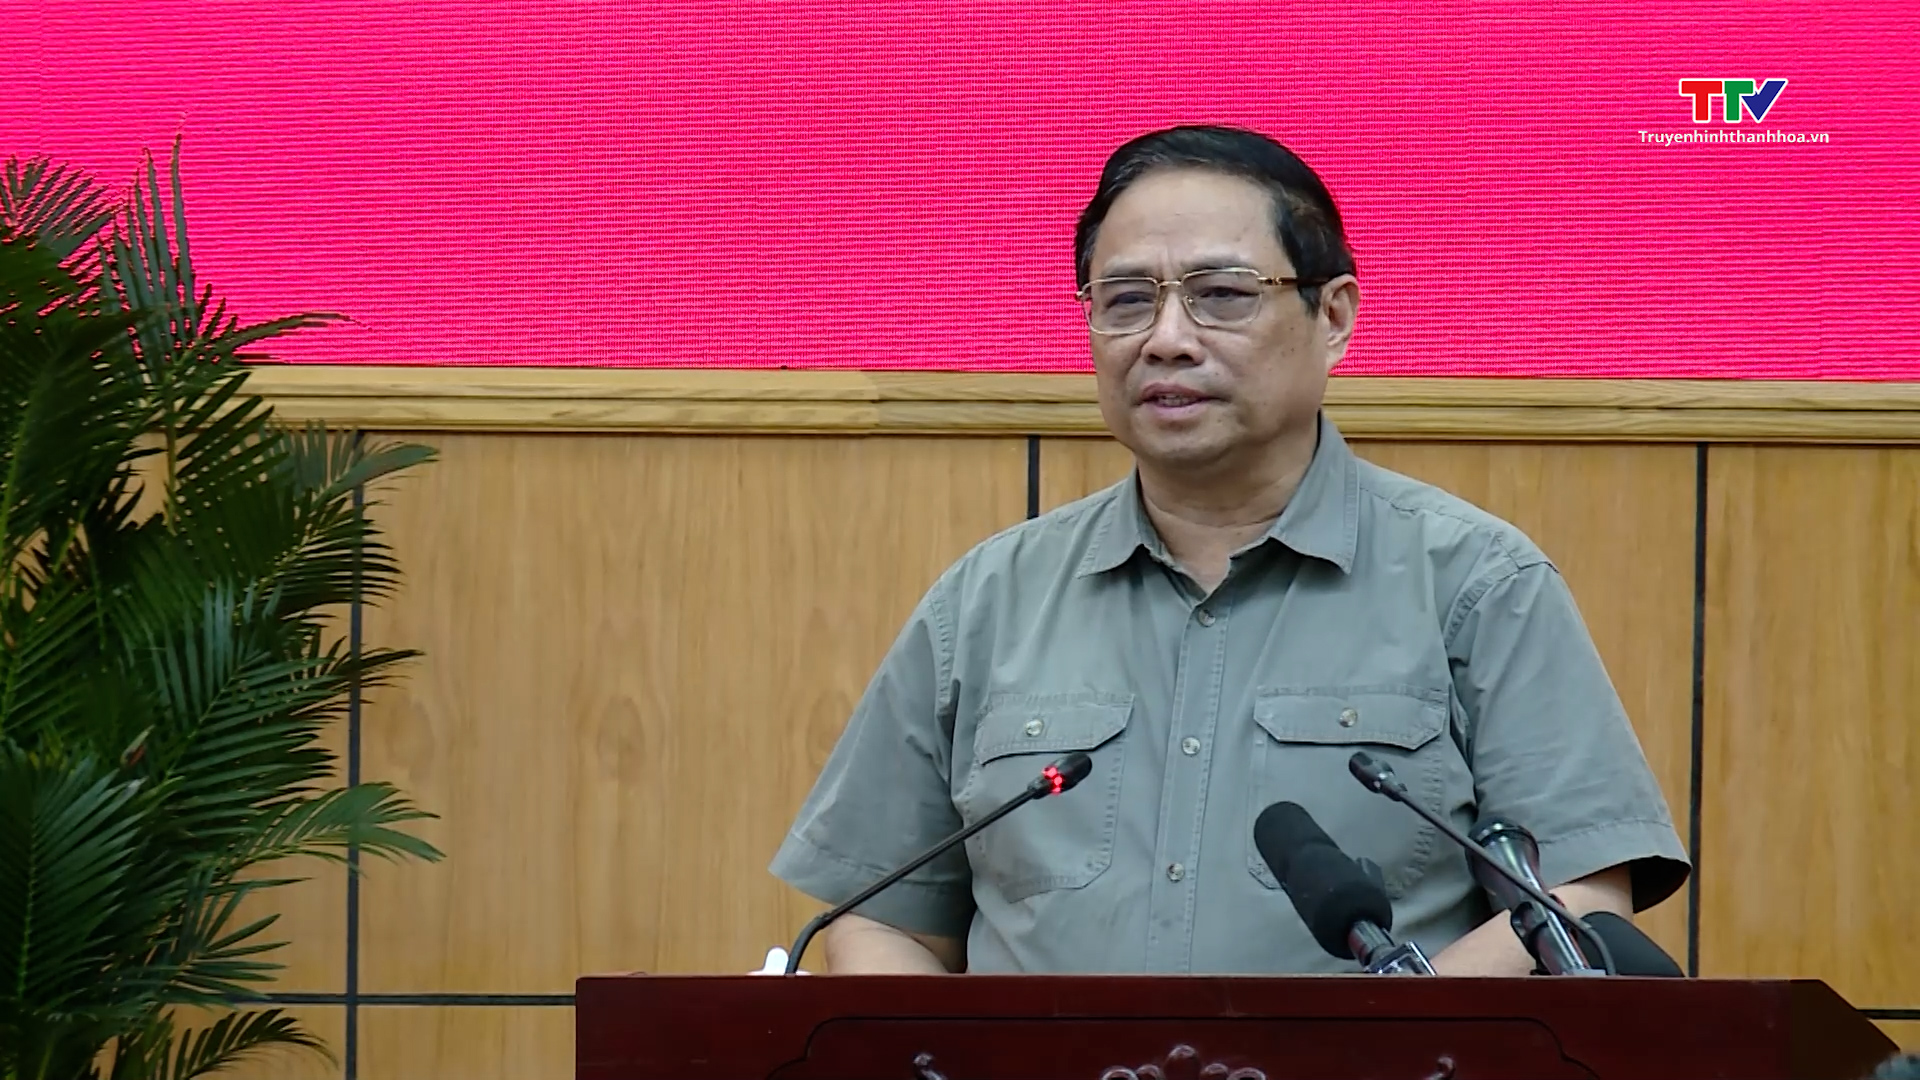 Thủ tướng Chính phủ Phạm Minh Chính làm việc với tỉnh Thanh Hóa về tình hình kinh tế - xã hội, quốc phòng - an ninh, công tác xây dựng Đảng và hệ thống chính trị - Ảnh 8.